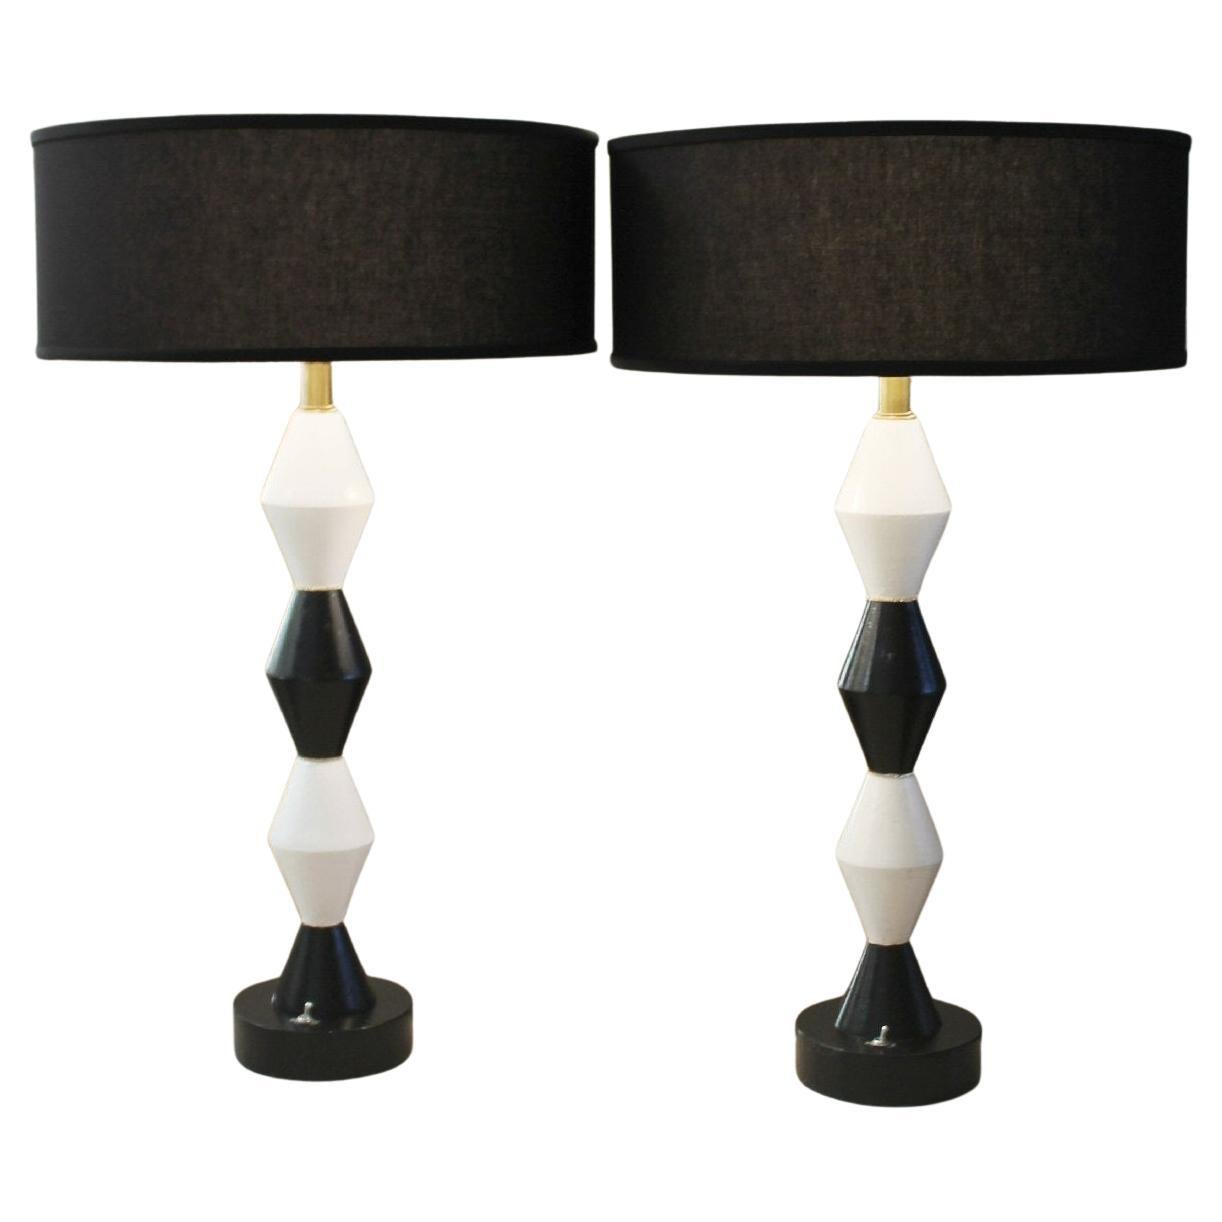 Une paire monumentale ! FREDERICK COOPER lampes décoratives Harlequin noires et blanches rares en vente